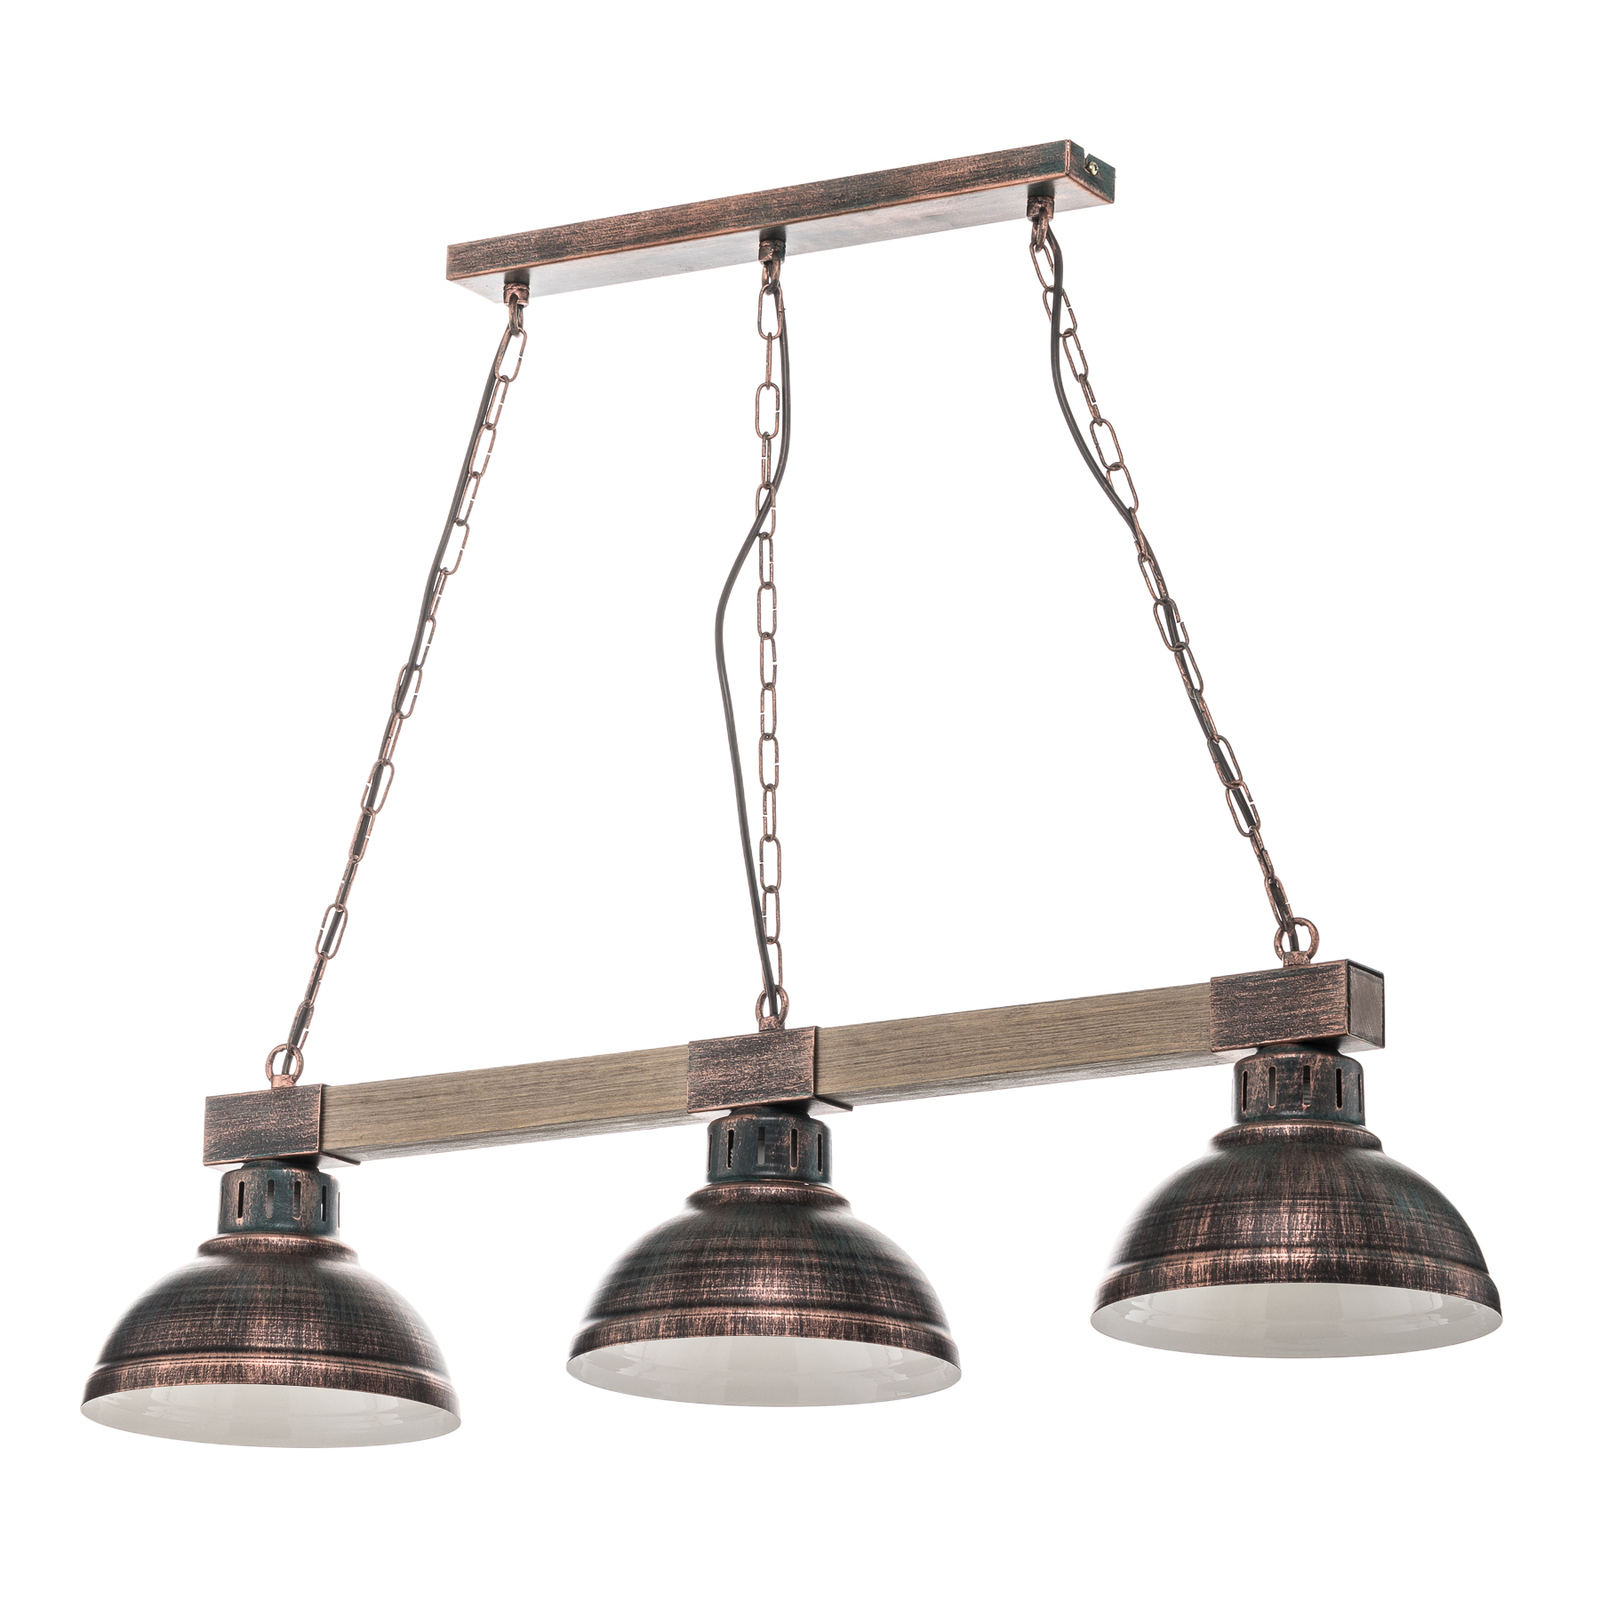 Hakon 3-lamps hanglamp roestbruin/naturel hout